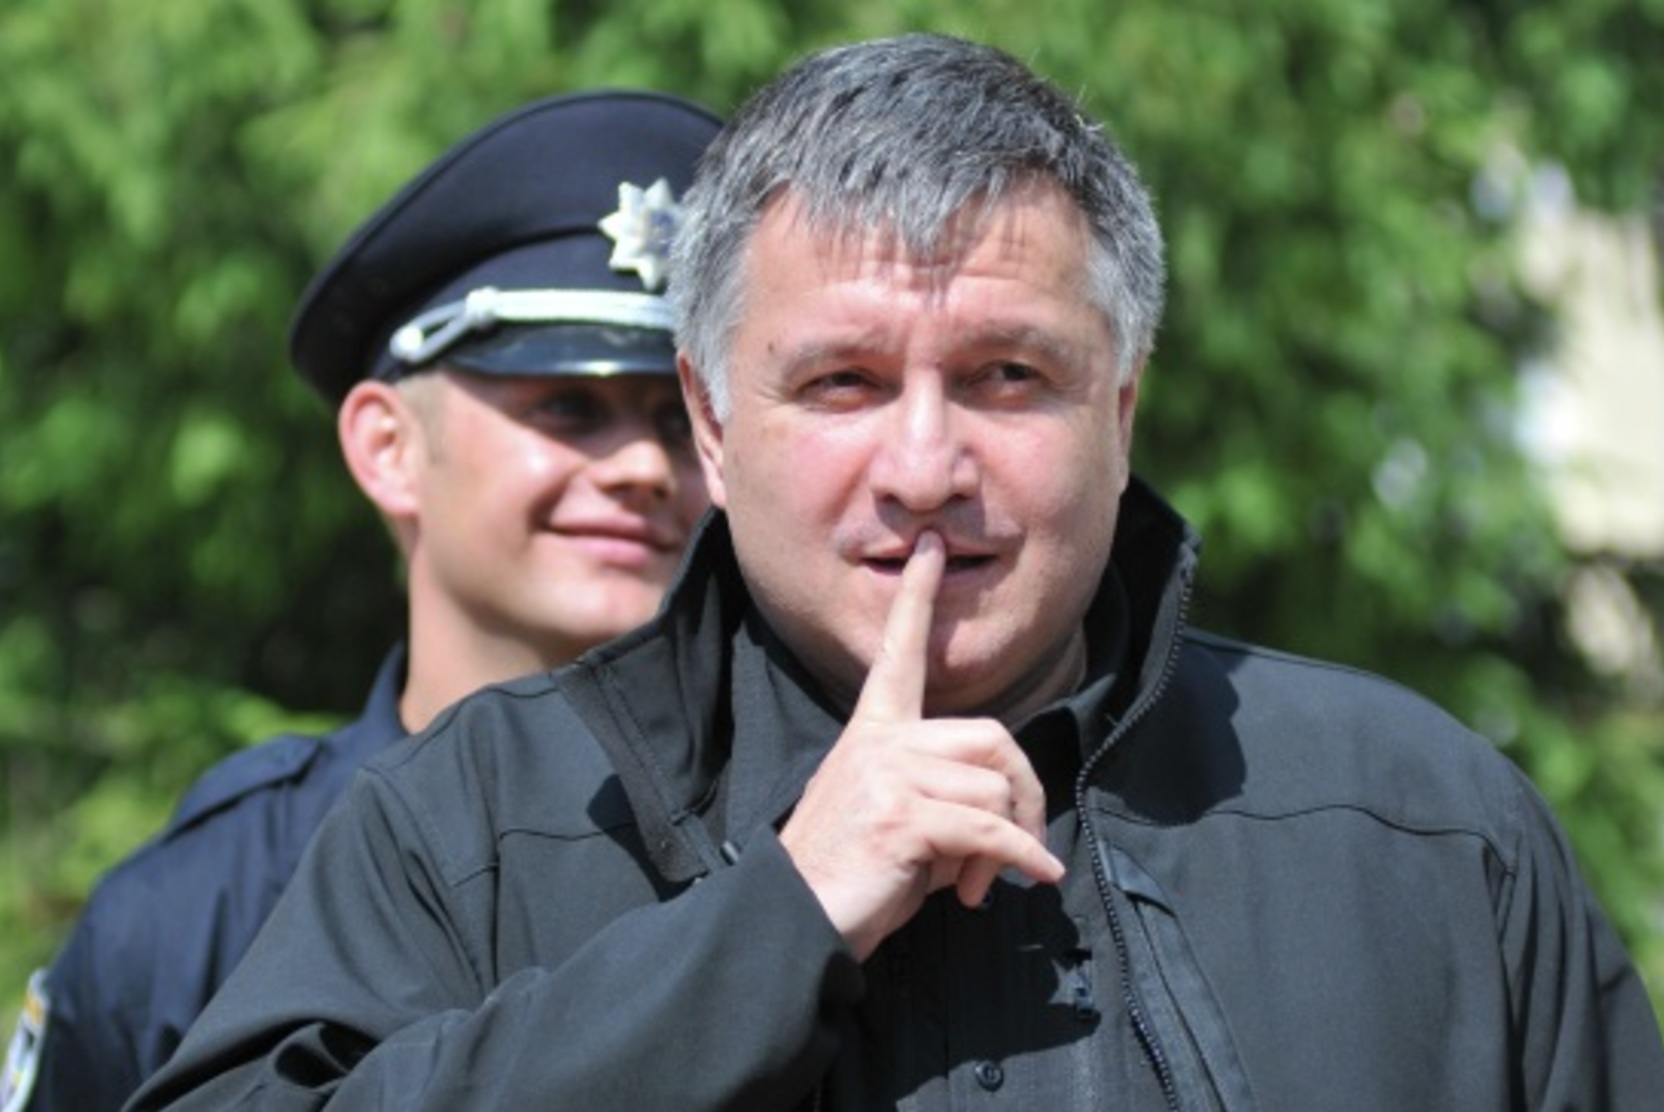 «Честь имею!» МВД Украины подтвердило прошение об отставке Авакова